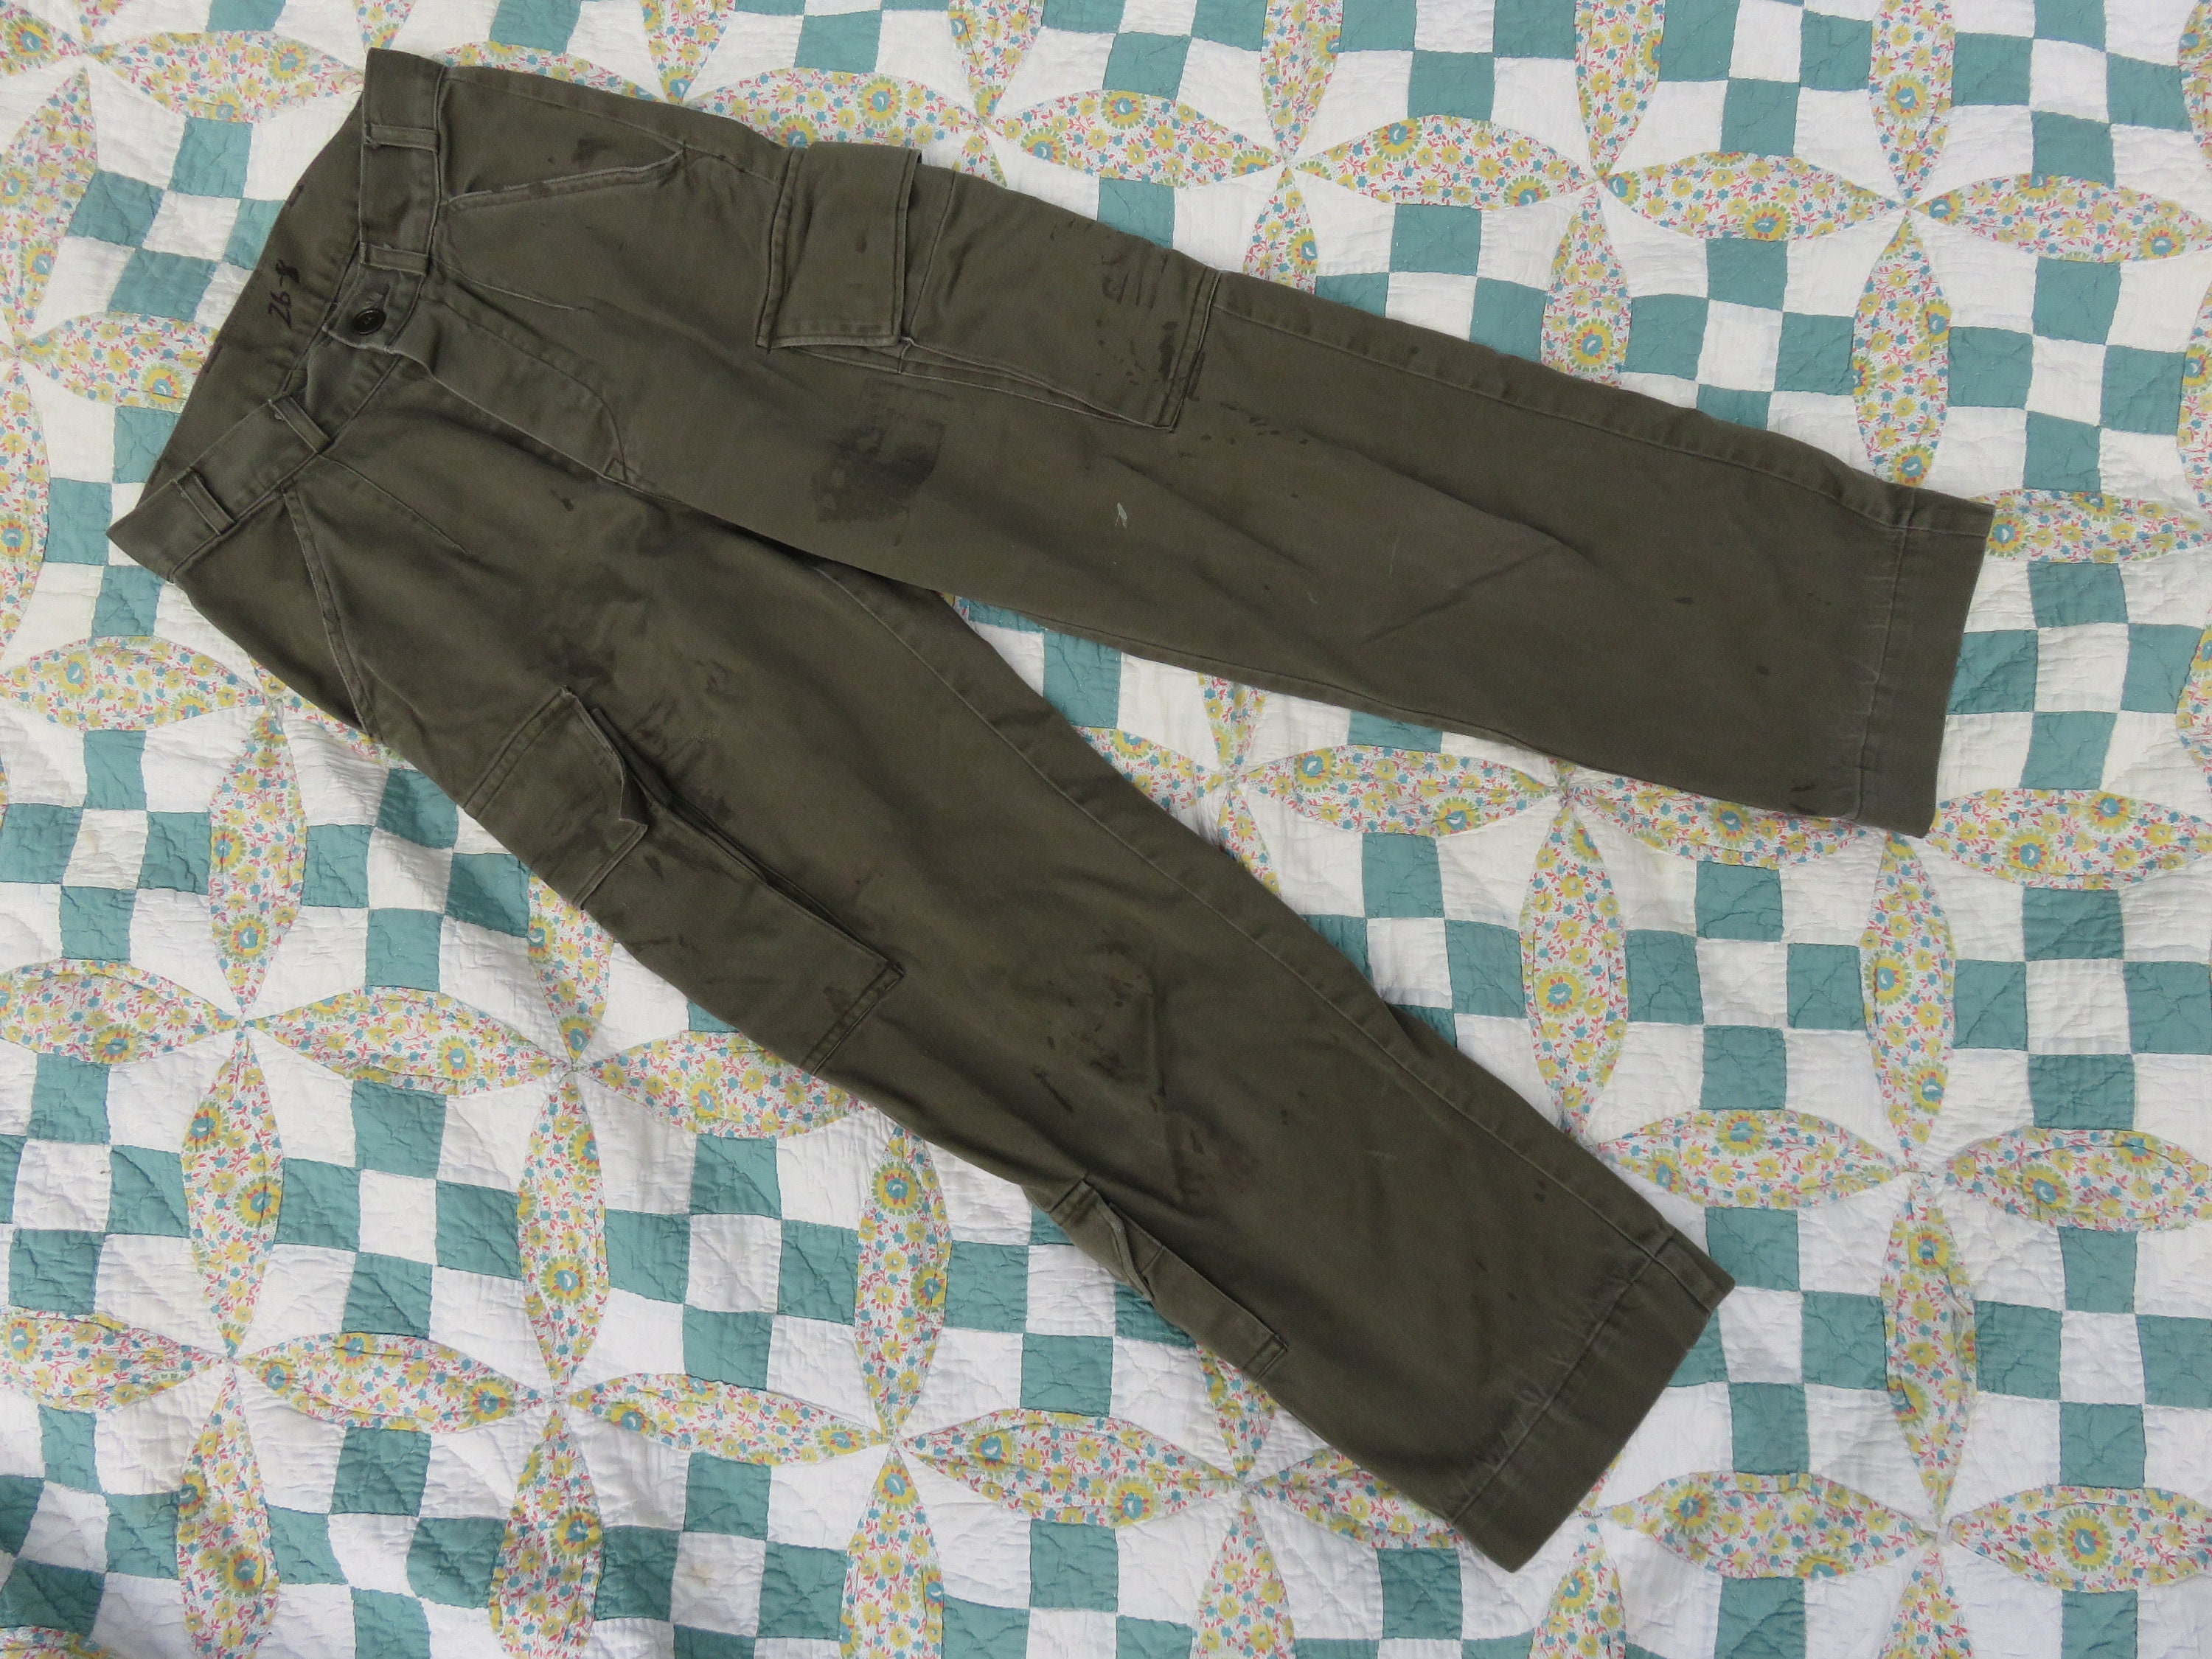 Euro military pants 80s